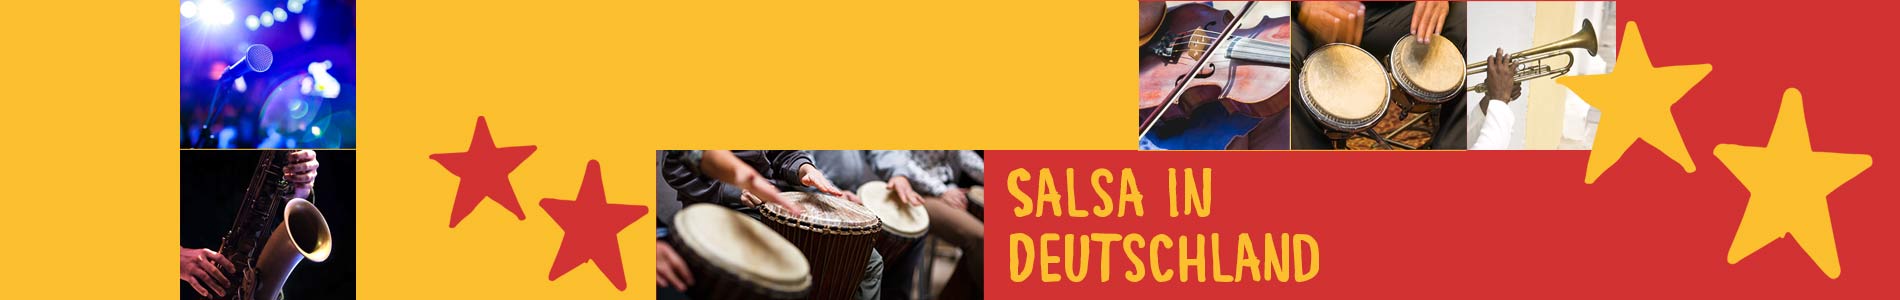 Salsa in Breitenburg – Salsa lernen und tanzen, Tanzkurse, Partys, Veranstaltungen